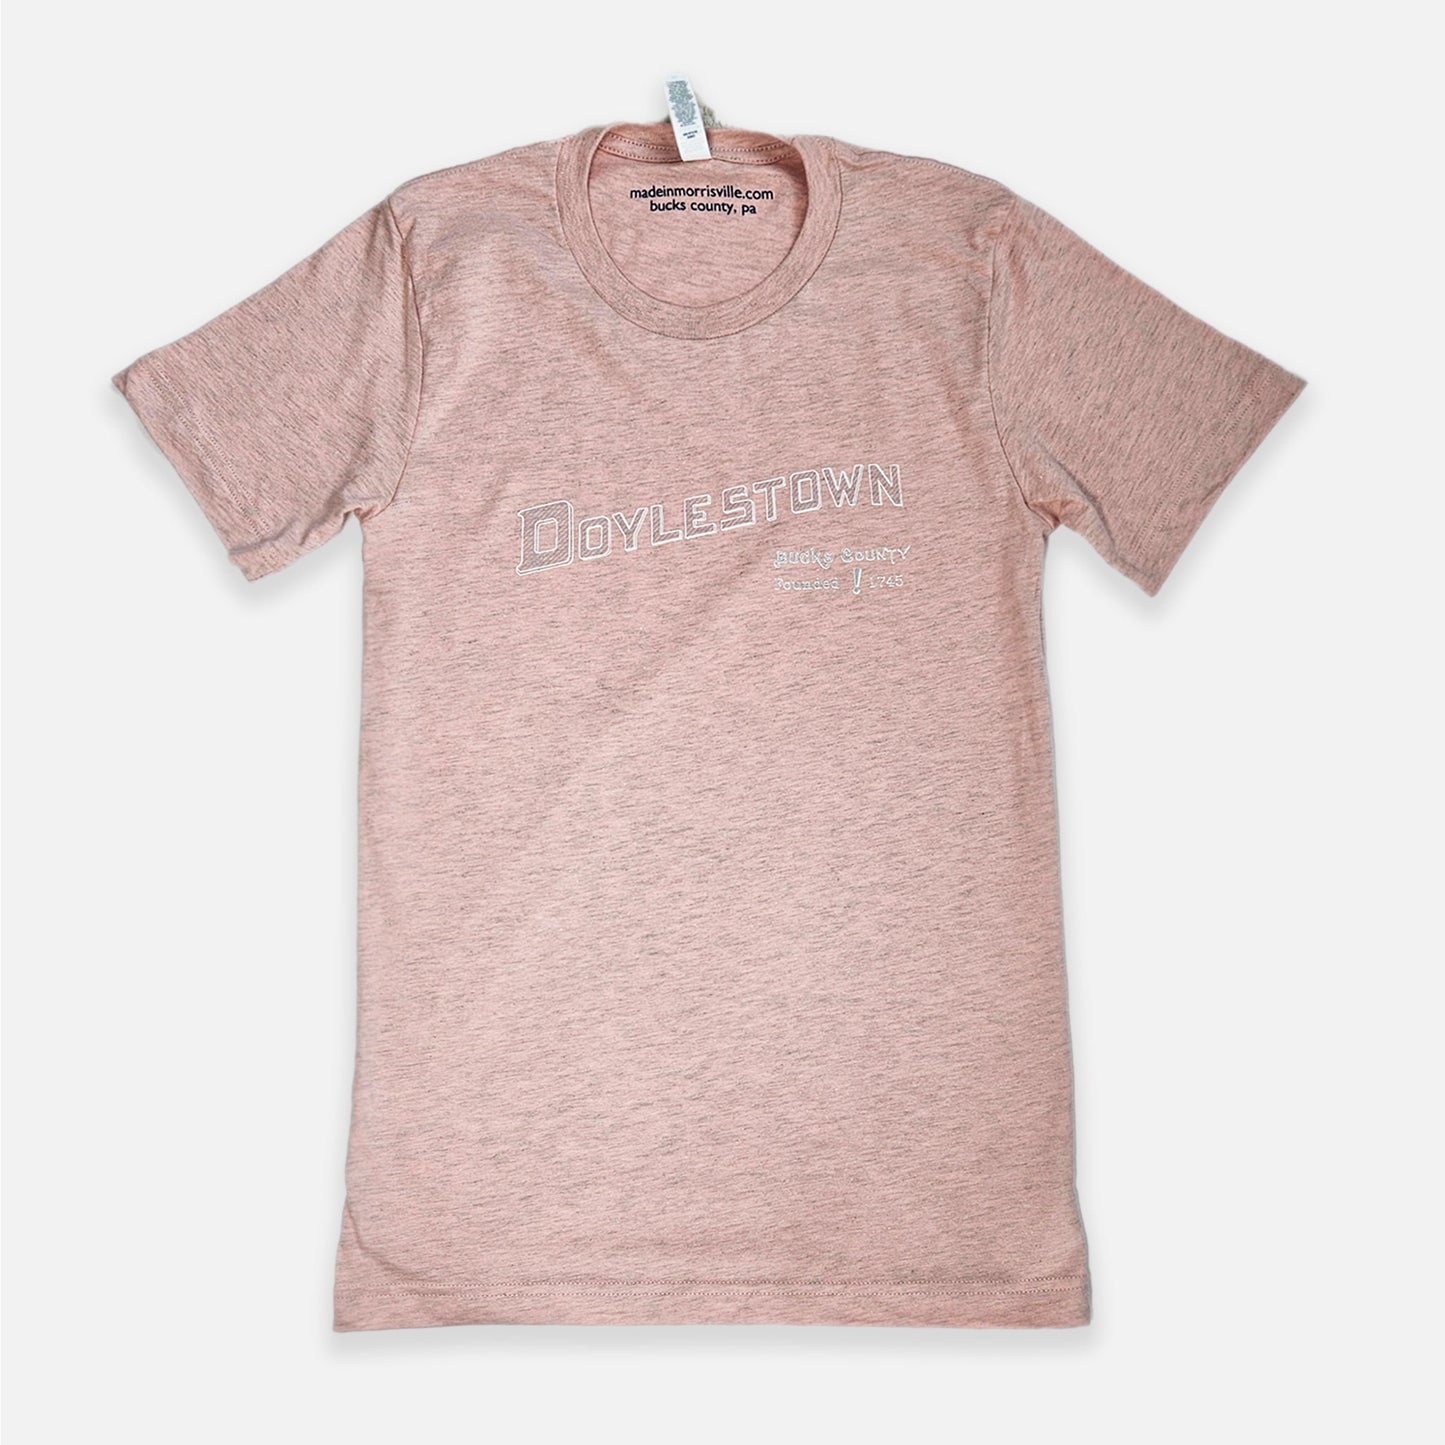 Doylestown graphic T-shirt - heather prism peach